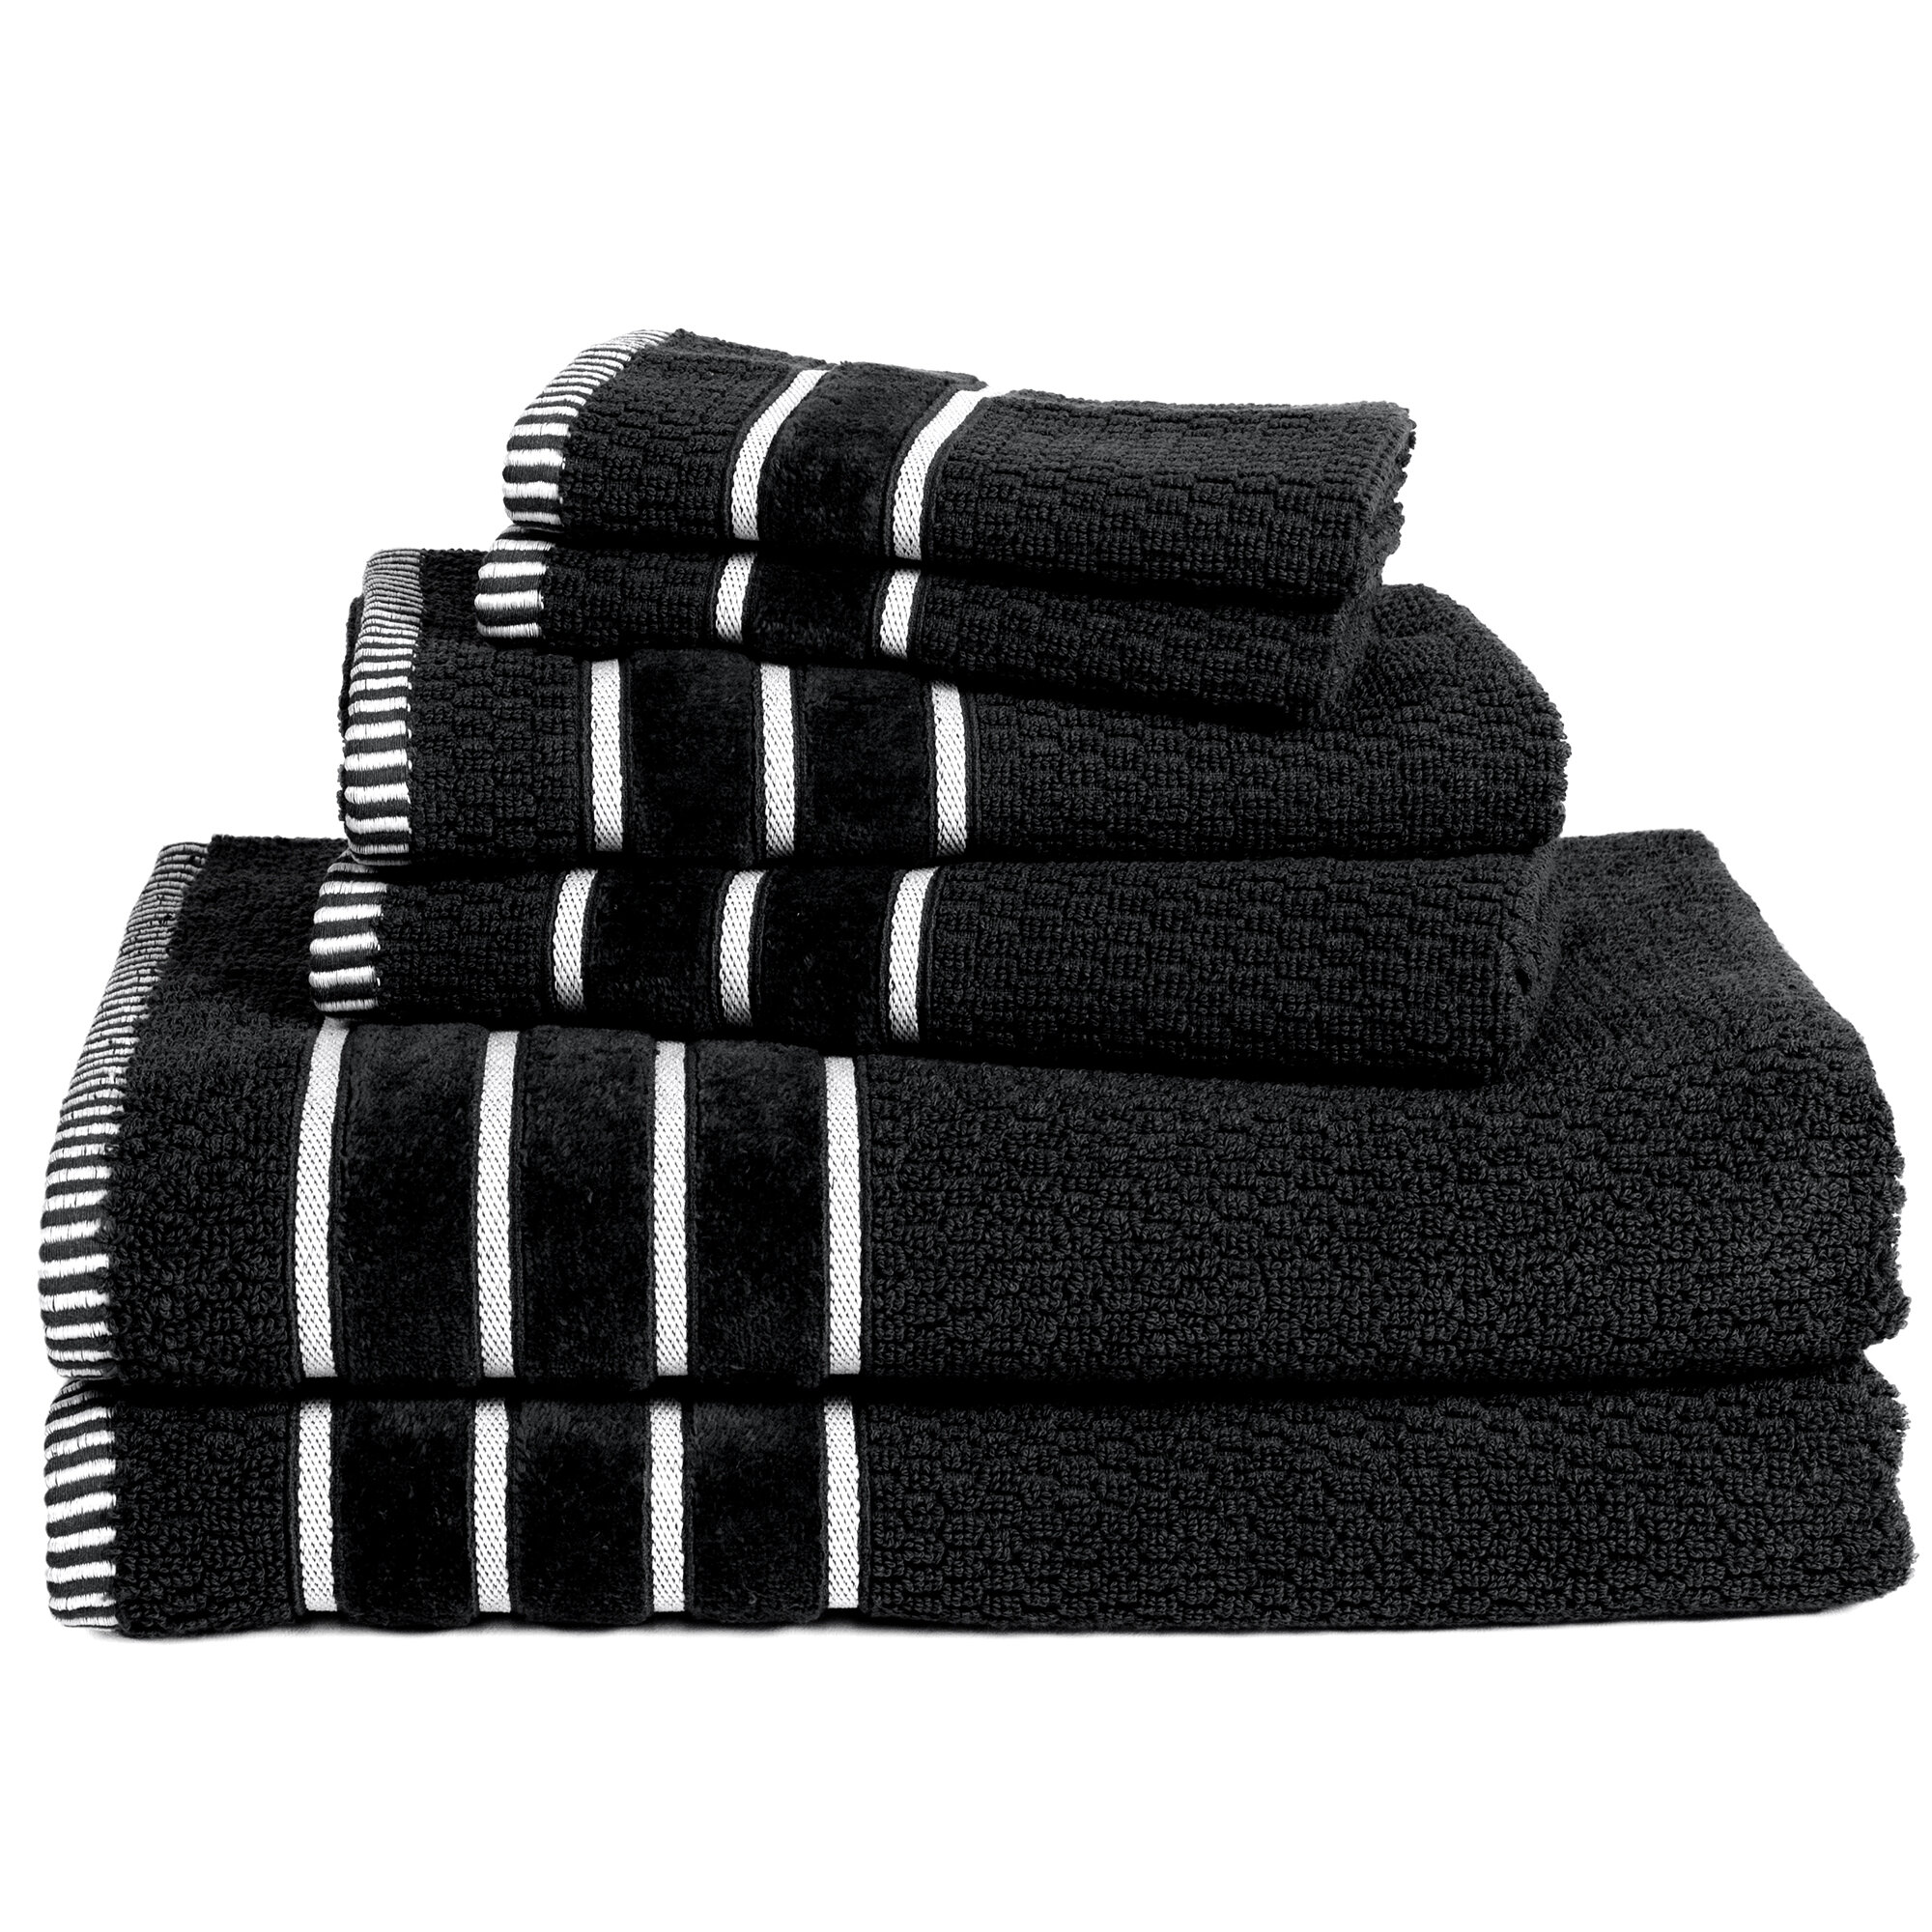 Gracie Oaks Jaiel 6-Piece Cotton Towel Set - with 2 Bath Towels, 2